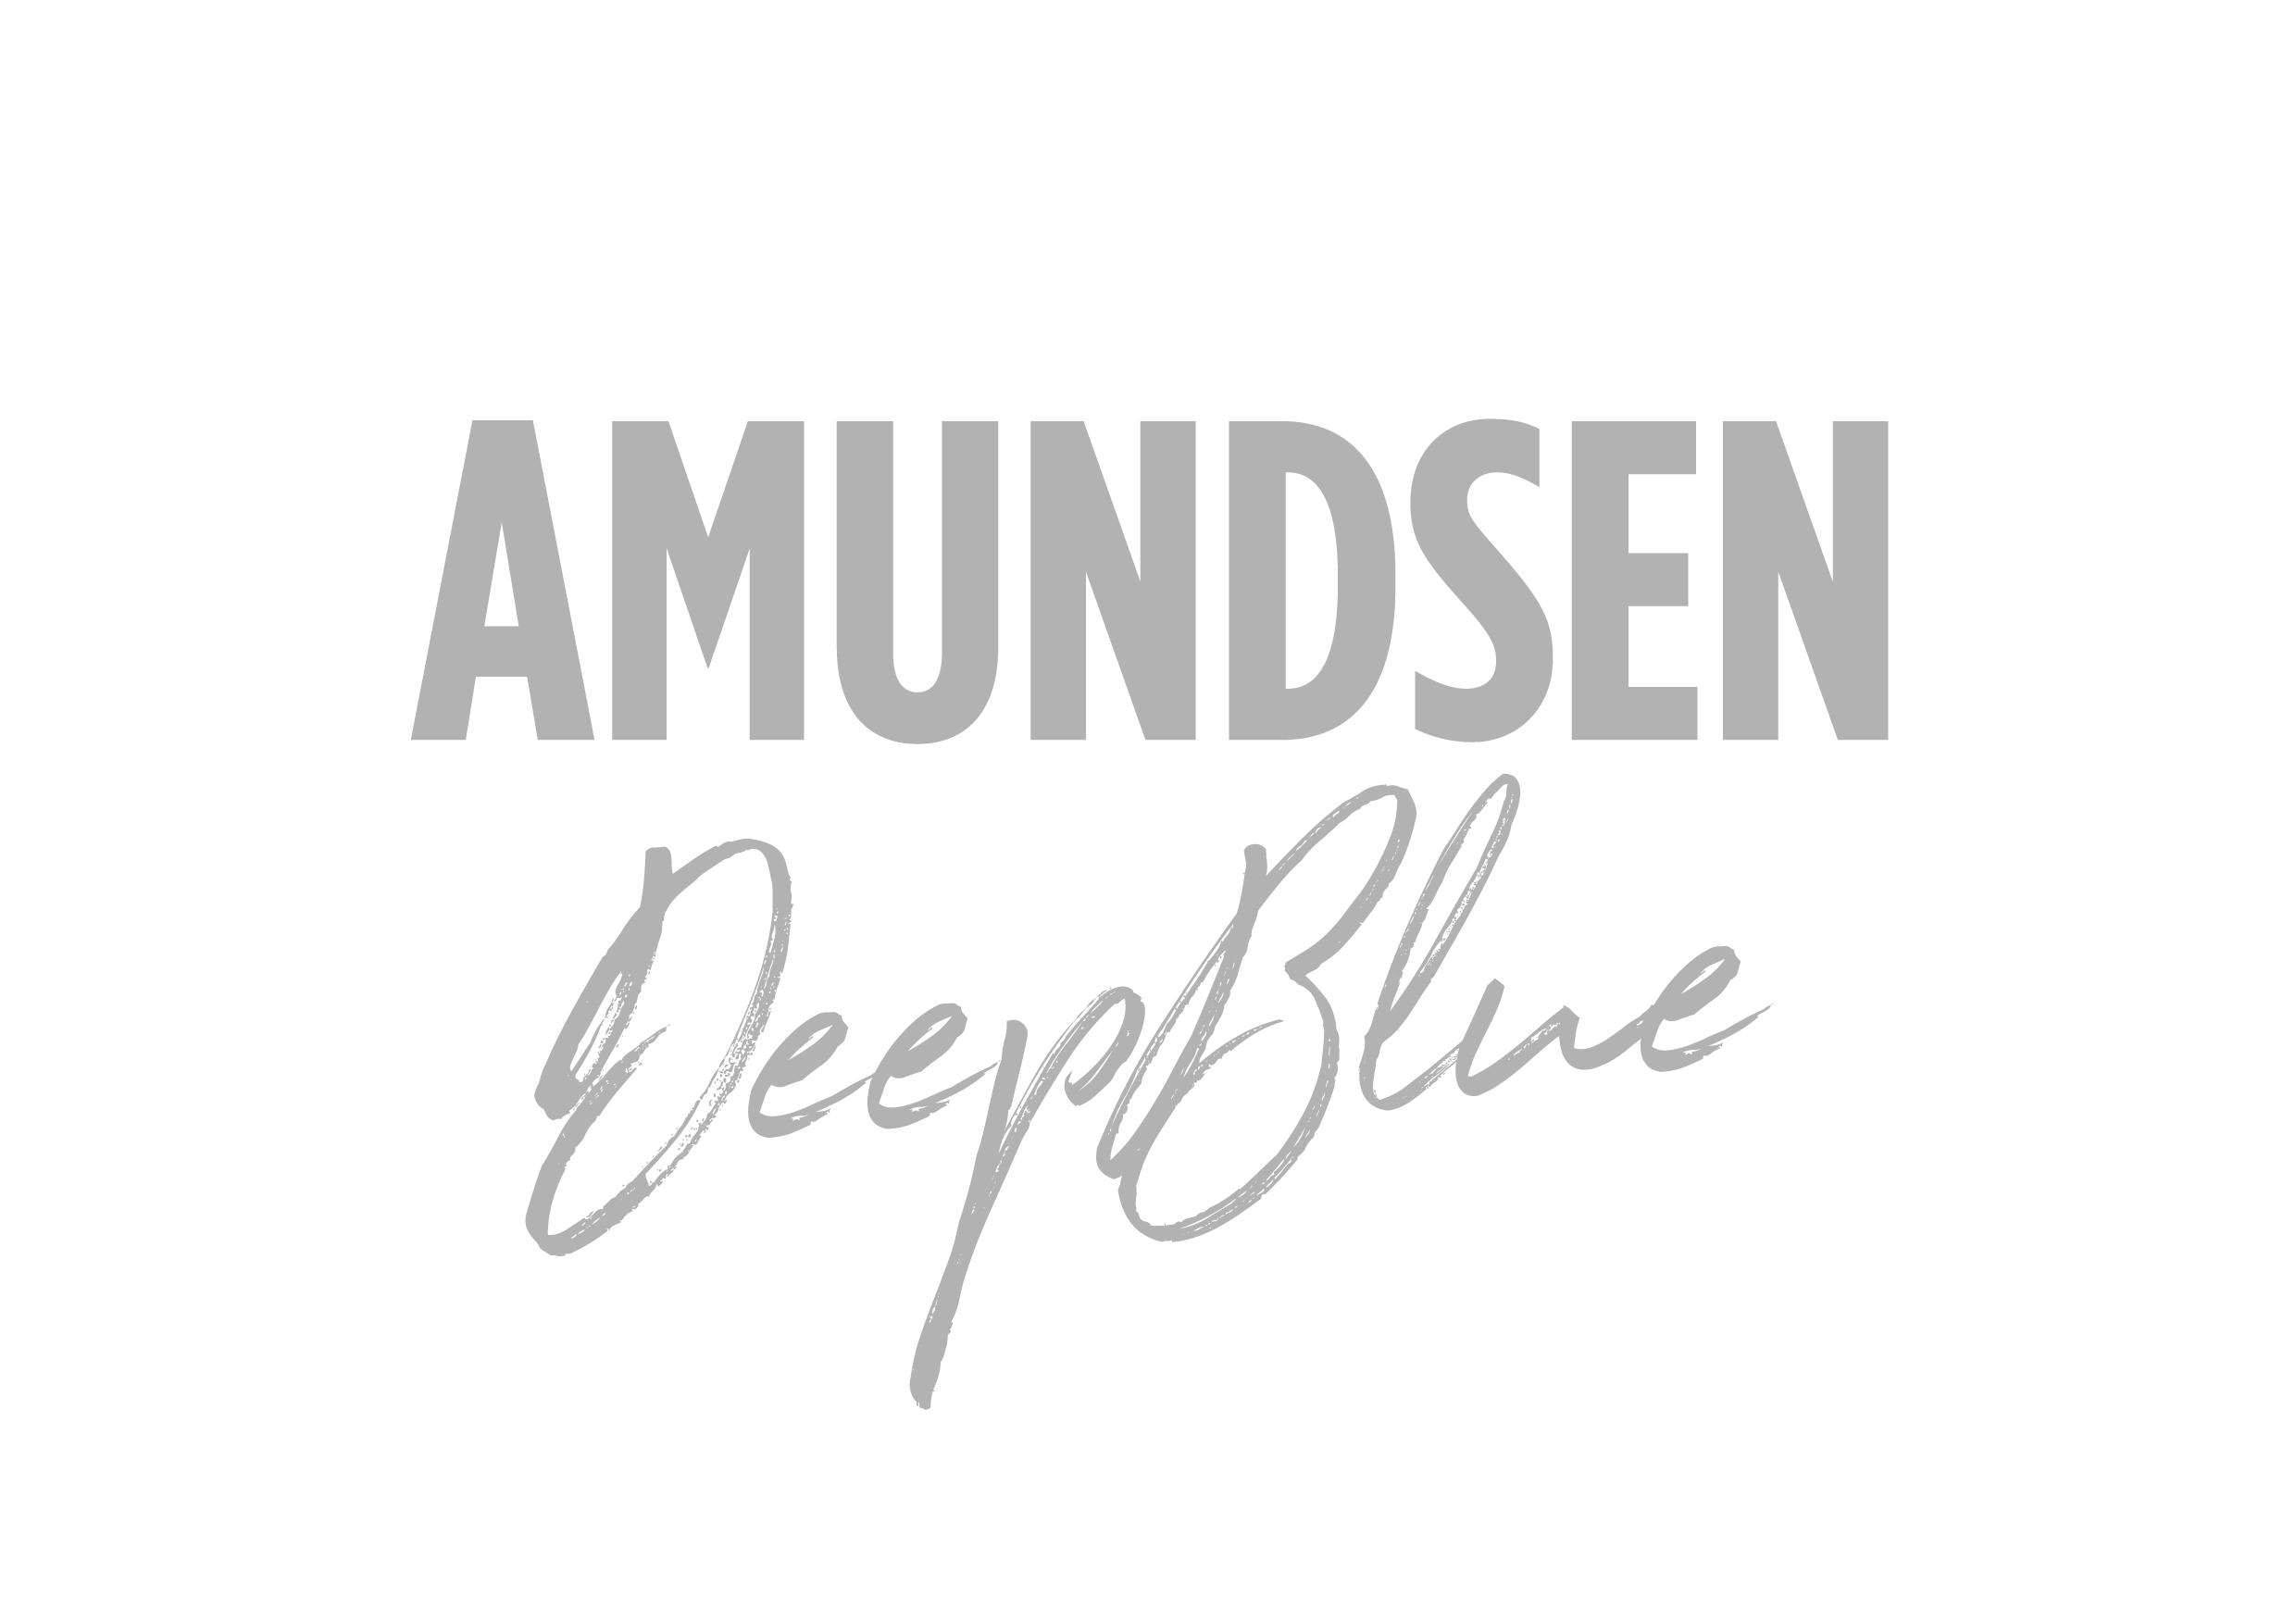 amundsen_deep_blue